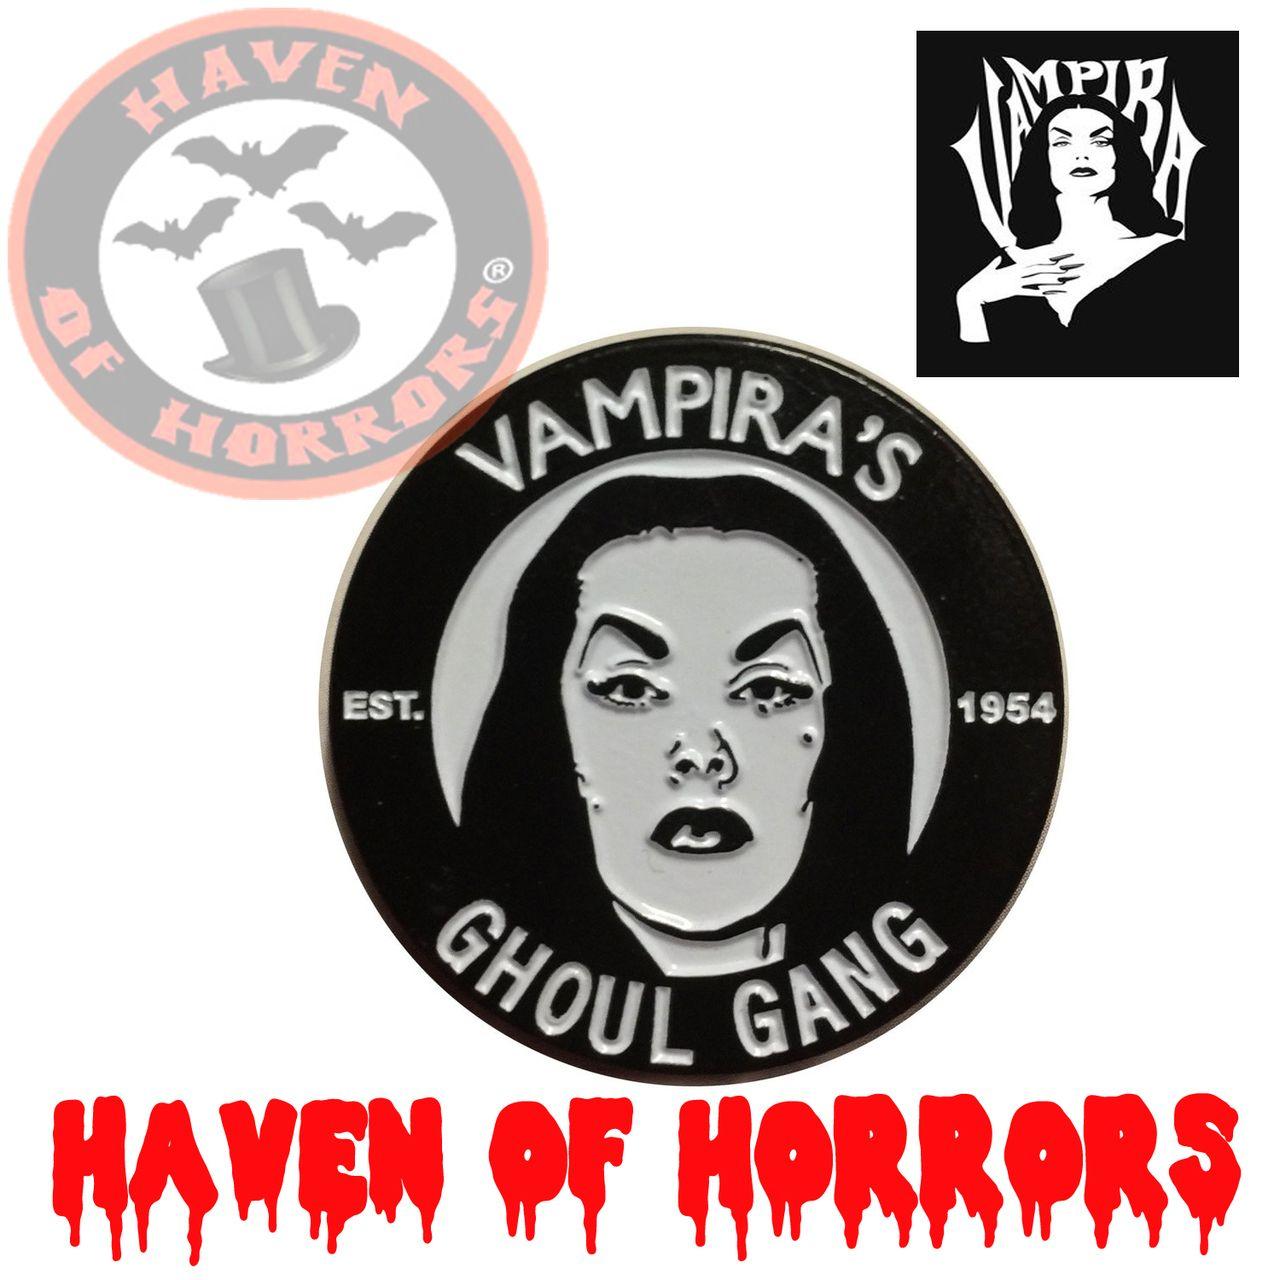 Vampira Logo - Vampira Ghoul Gang Pin